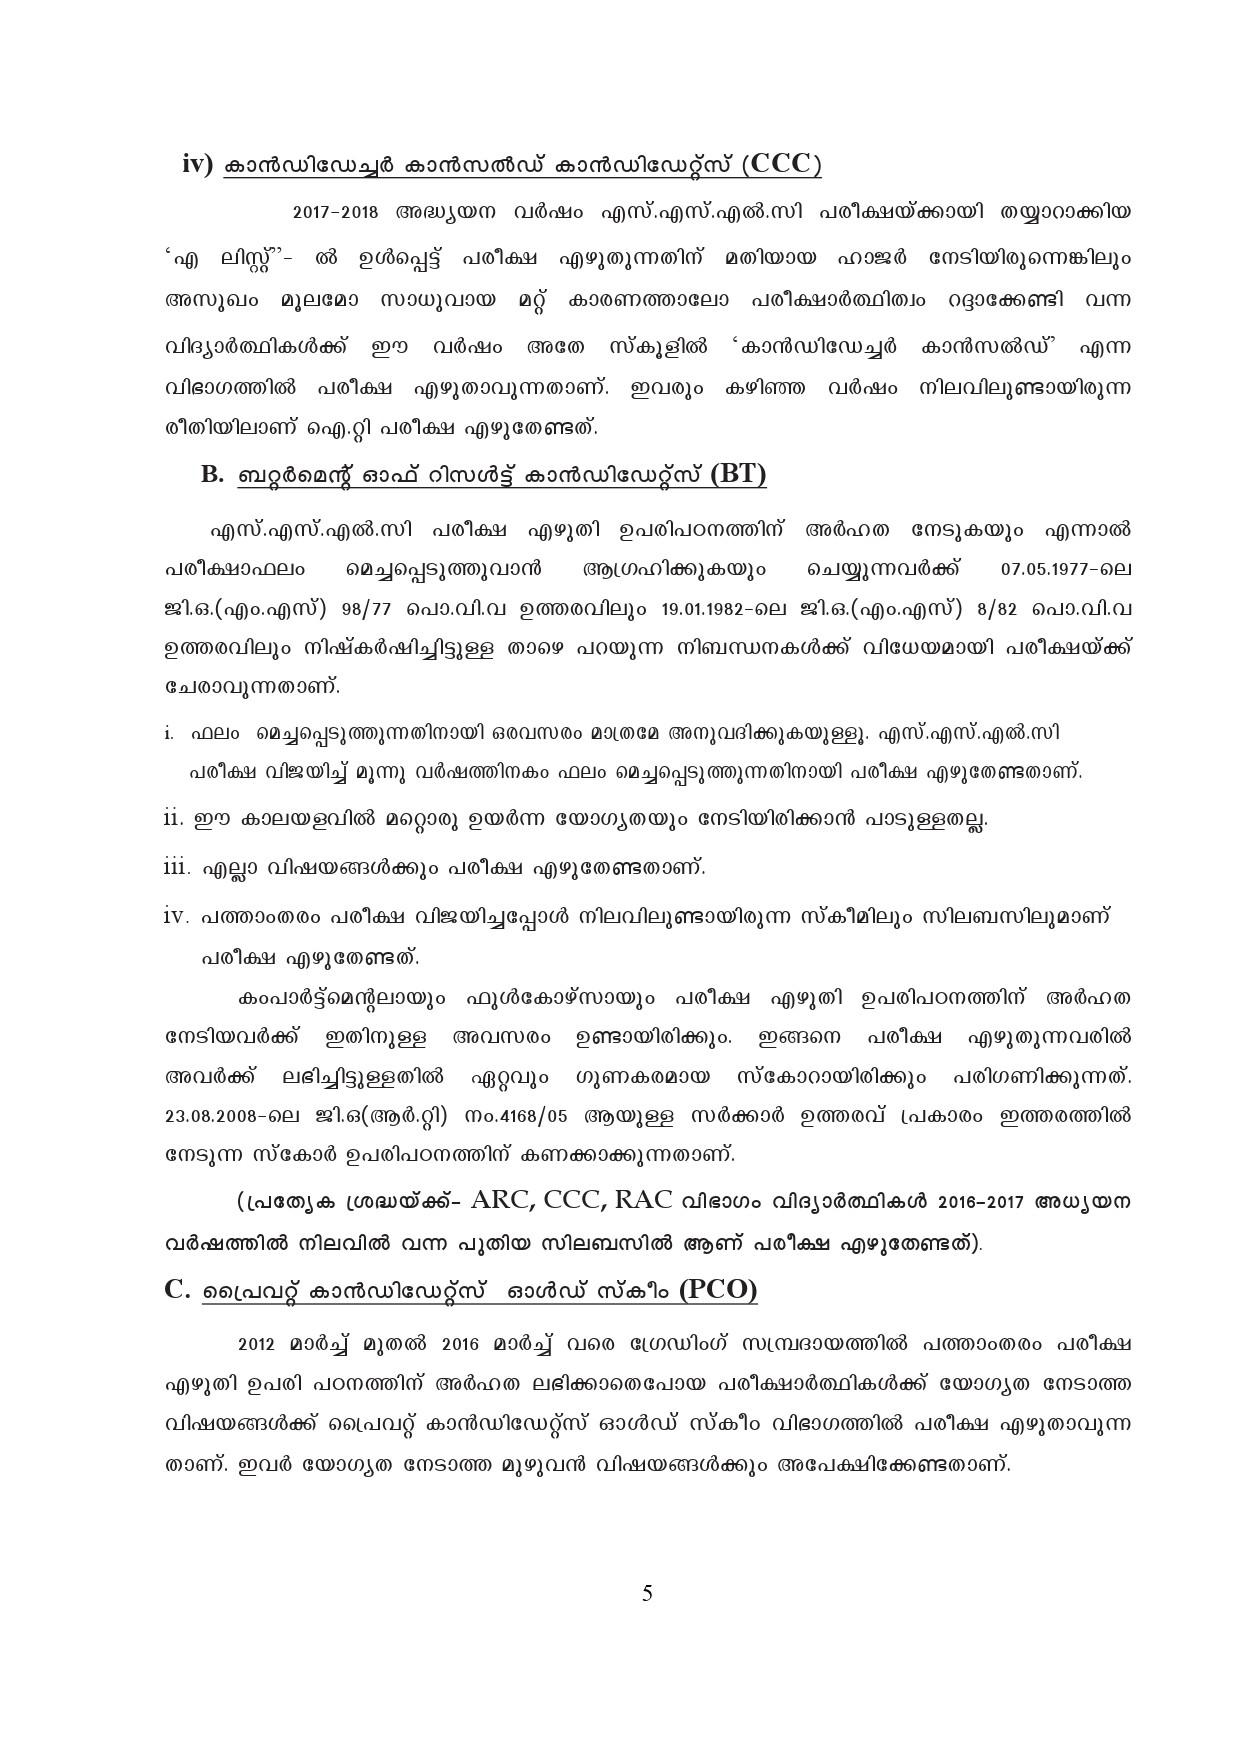 Kerala SSLC Exam Result 2019 - Notification Image 5